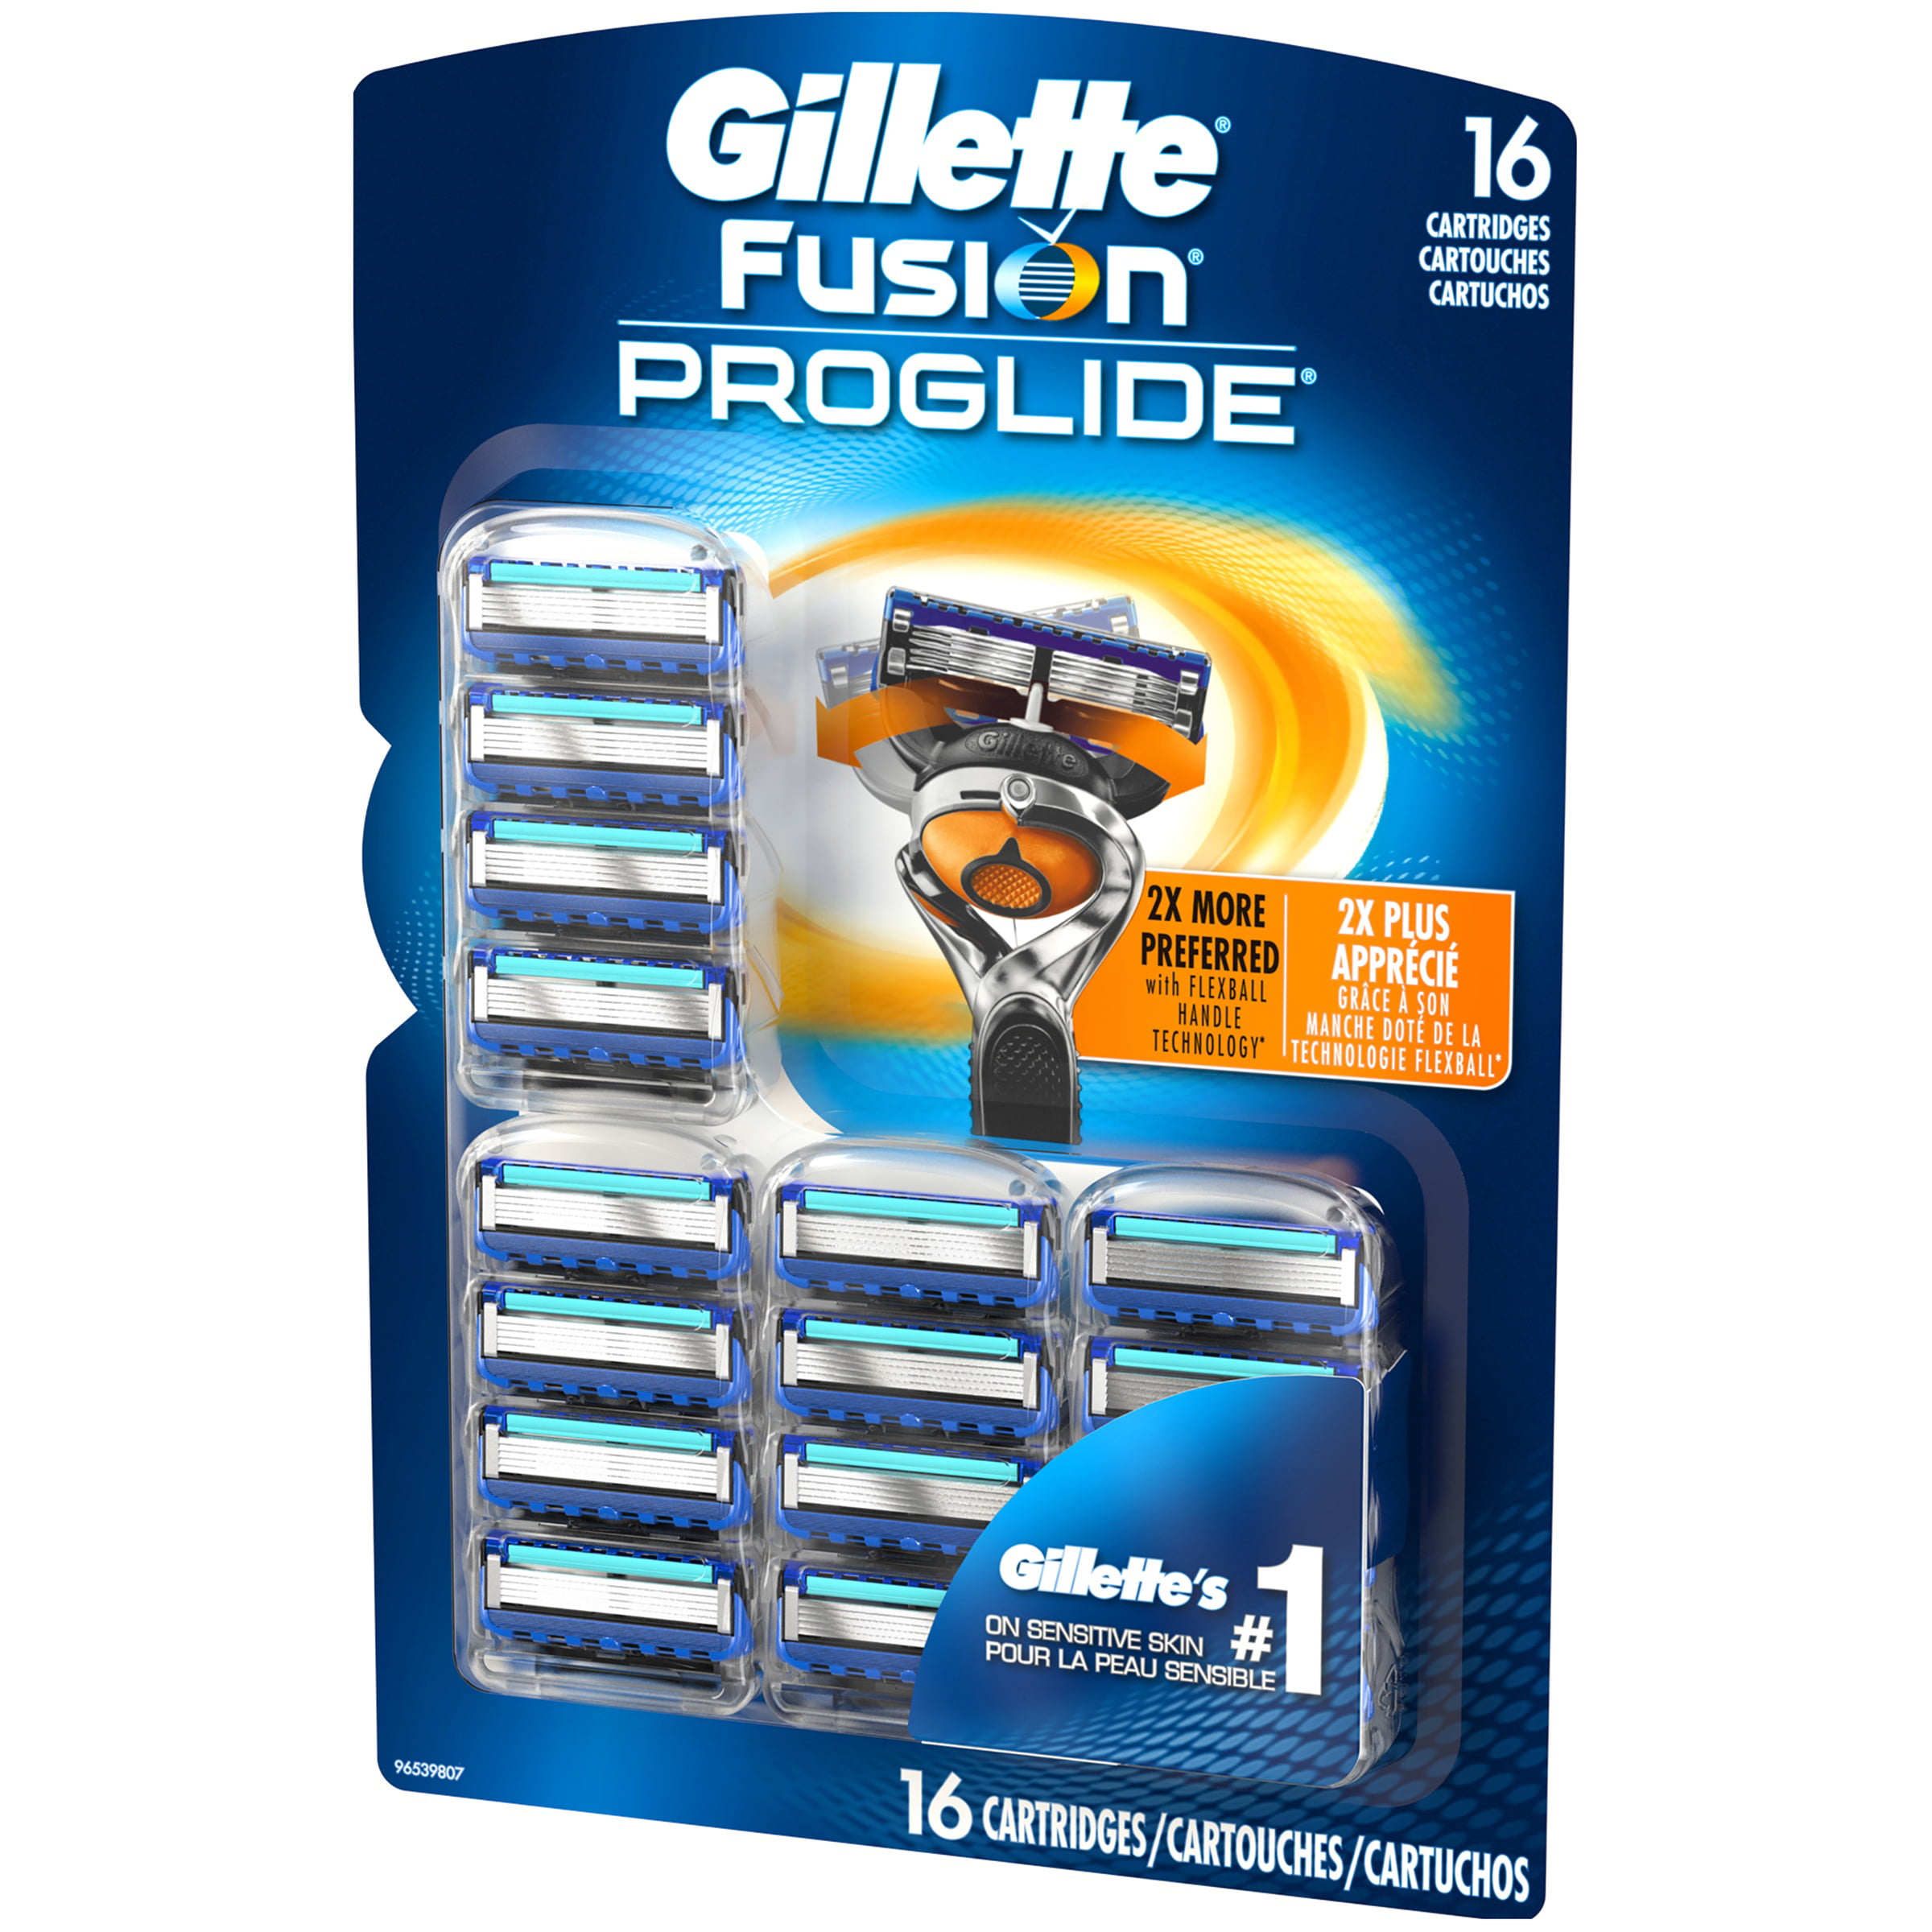 Gillette Fusion Proglide Cartridges Athletegym